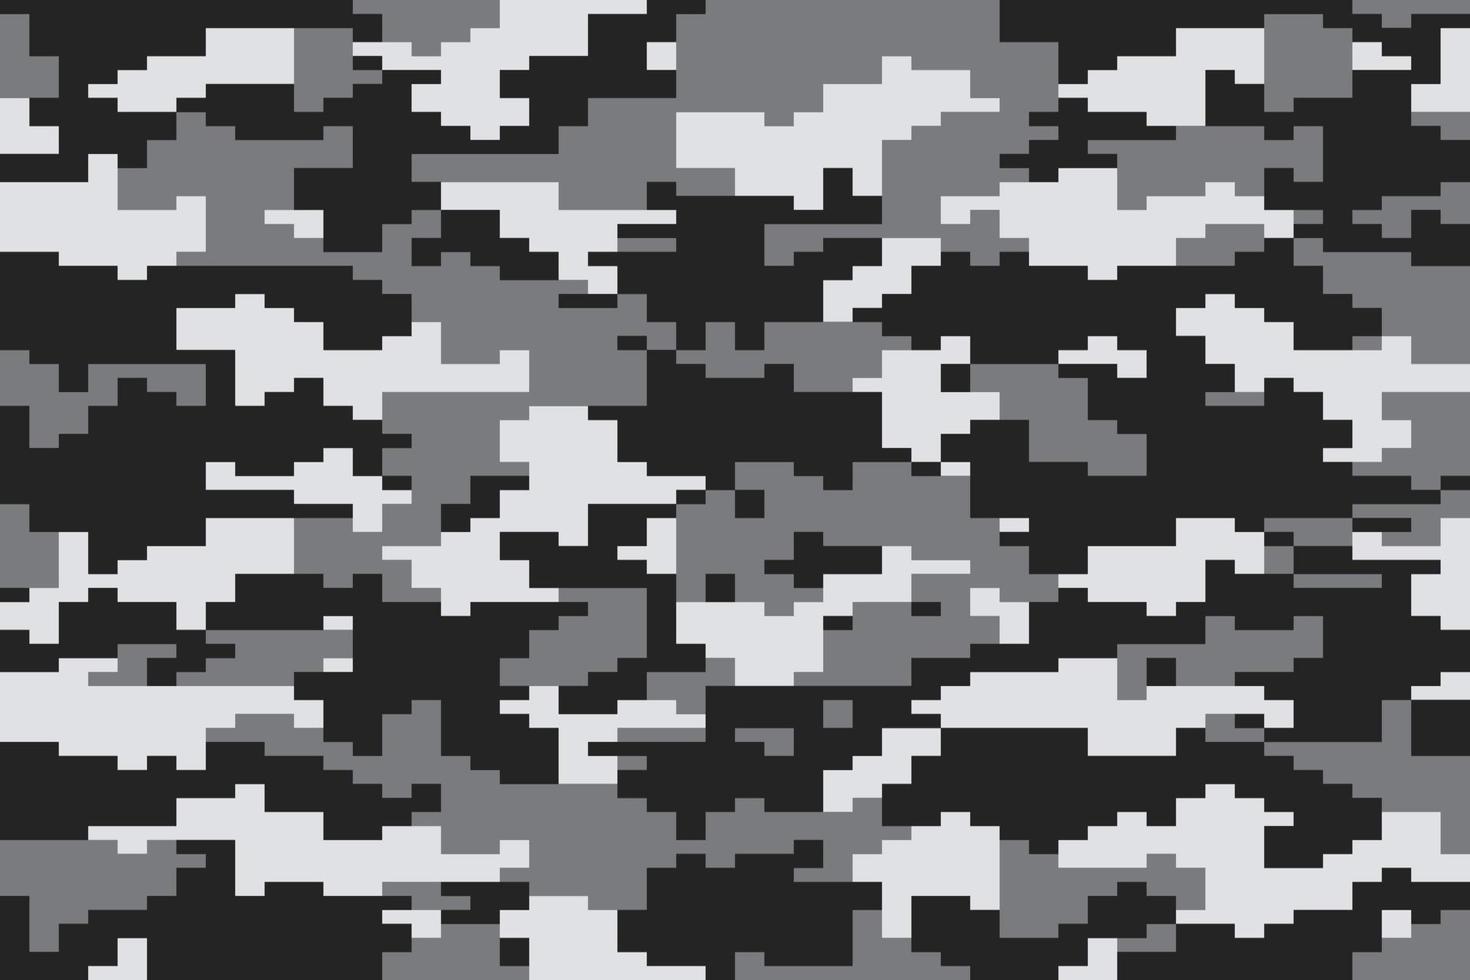 patrón de camuflaje negro, gris y blanco. fondo de camuflaje de píxeles de estilo moderno vector